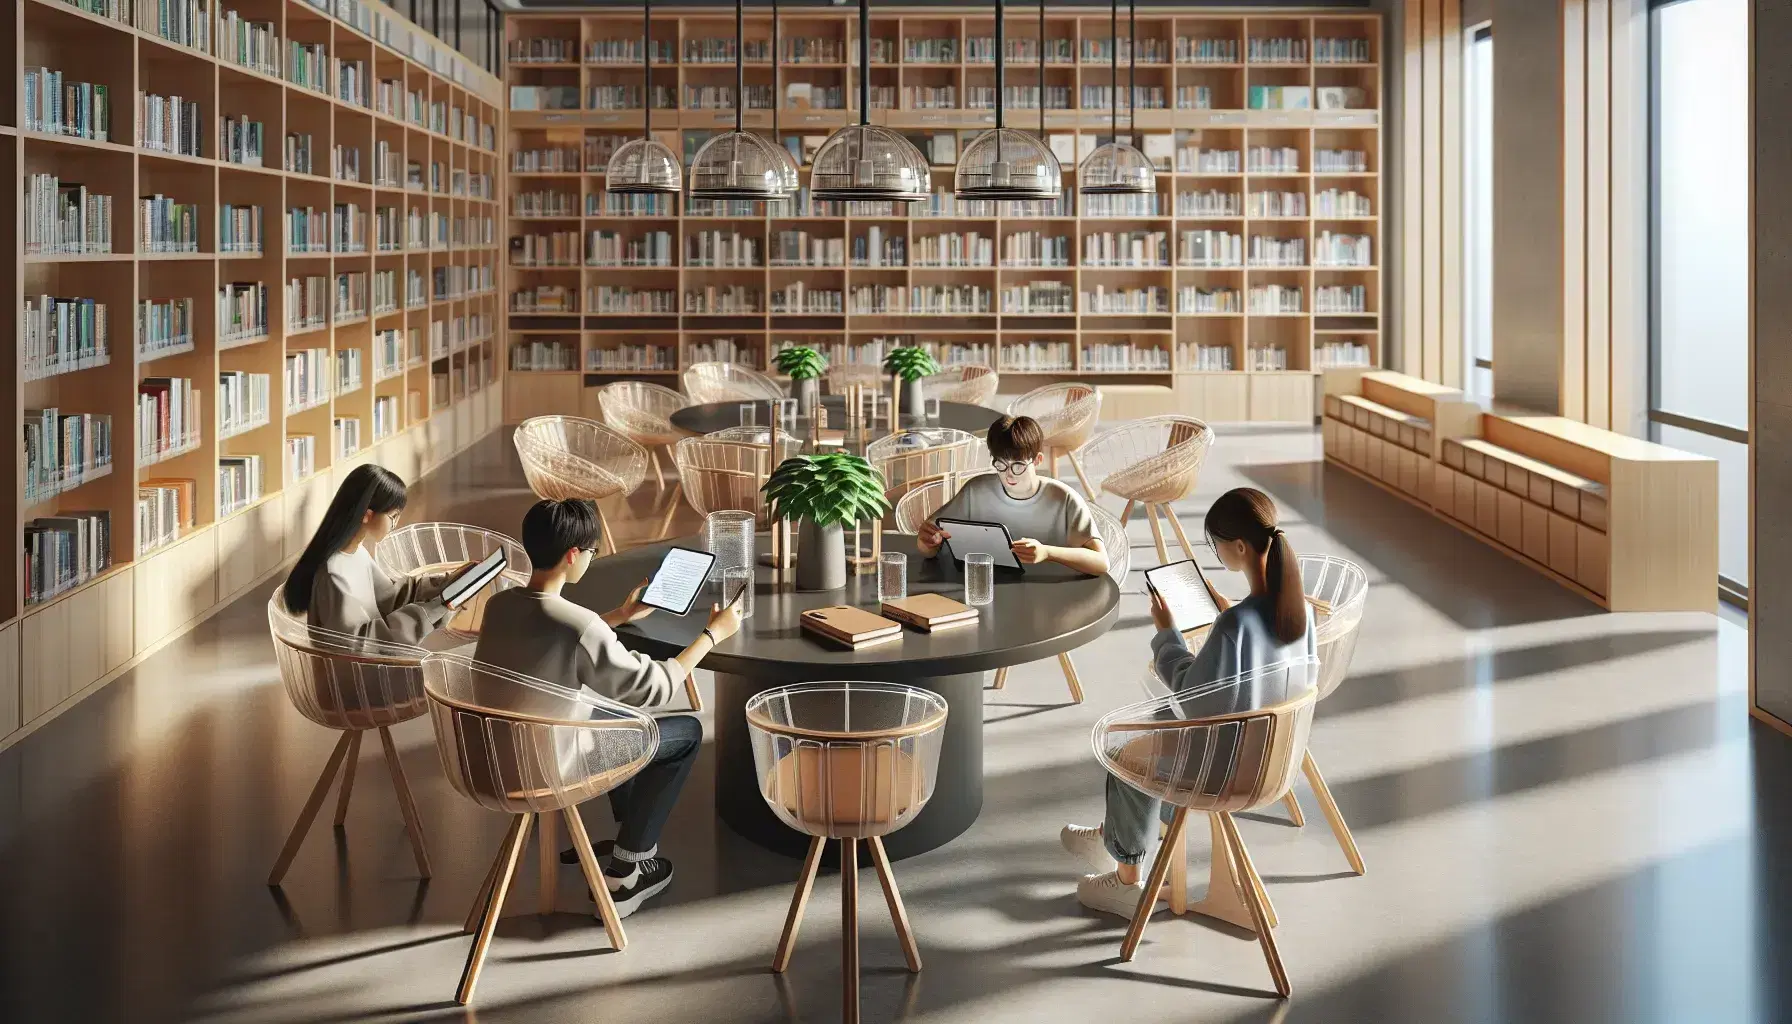 Biblioteca moderna con estantes de madera clara llenos de libros, mesa redonda con estudiantes usando tabletas y tomando notas, planta verde al fondo.